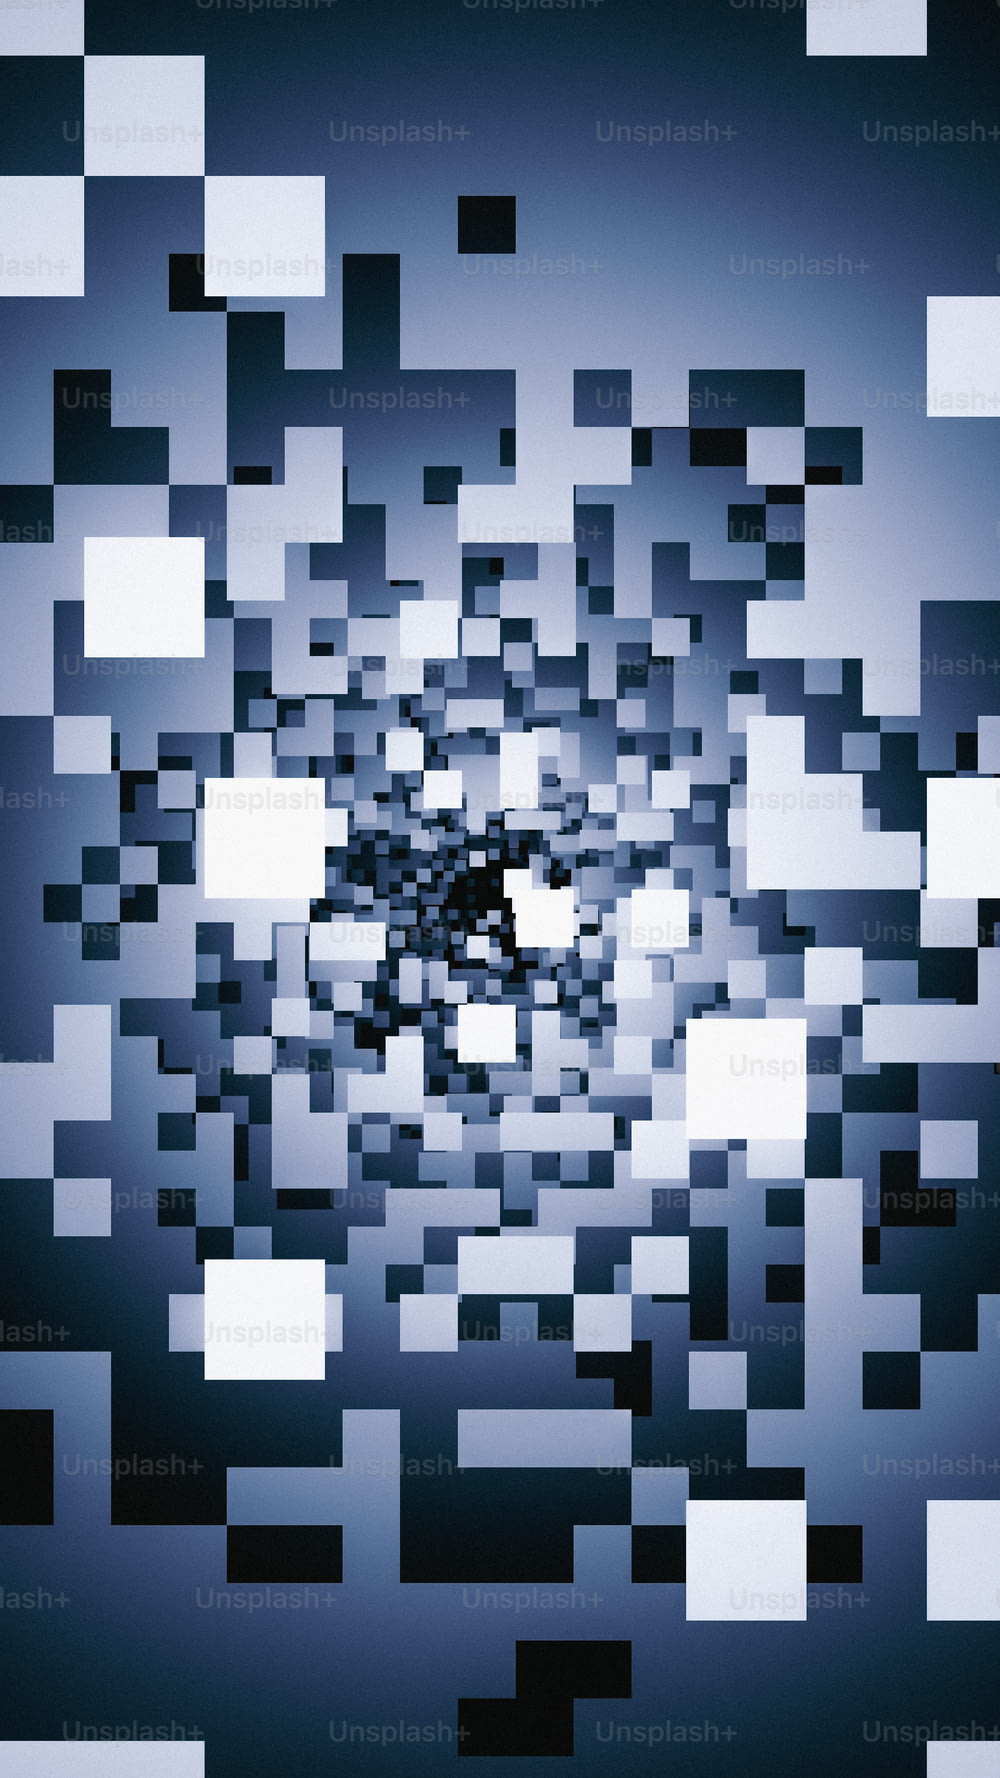 ein Schwarz-Weiß-Foto eines kreisförmigen Objekts